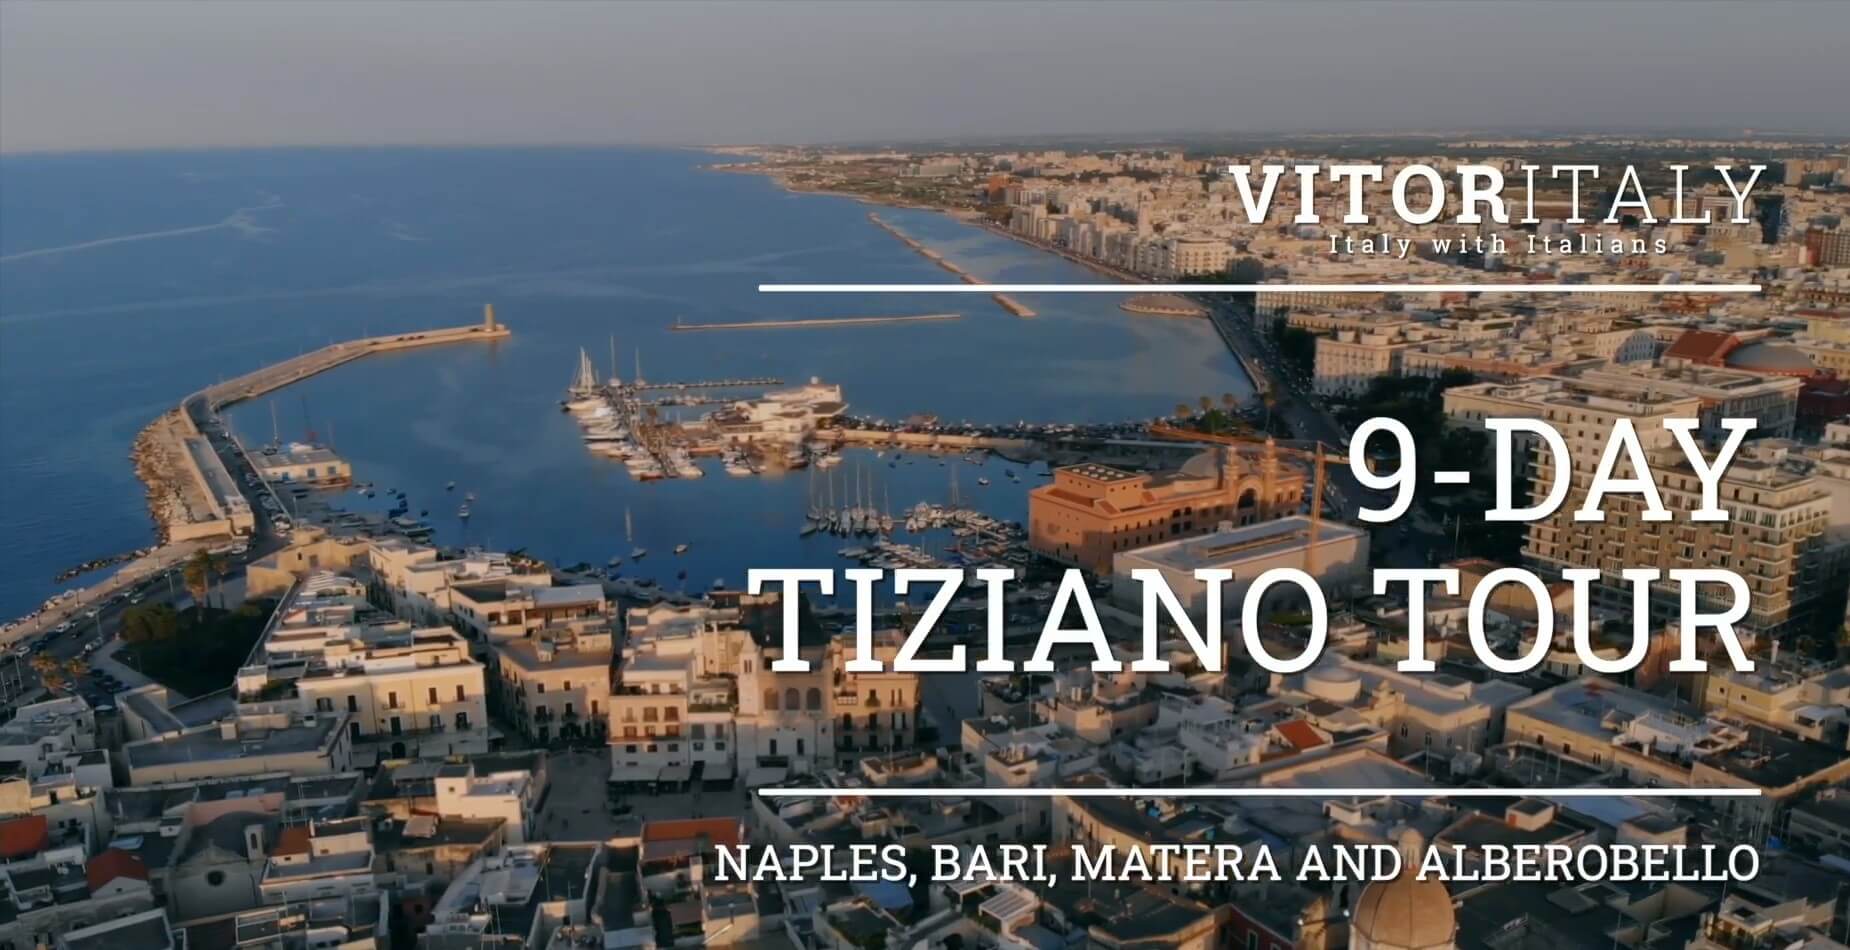 TIZIANO TOUR - Naples, Bari, Matera and Alberobello in 9 days